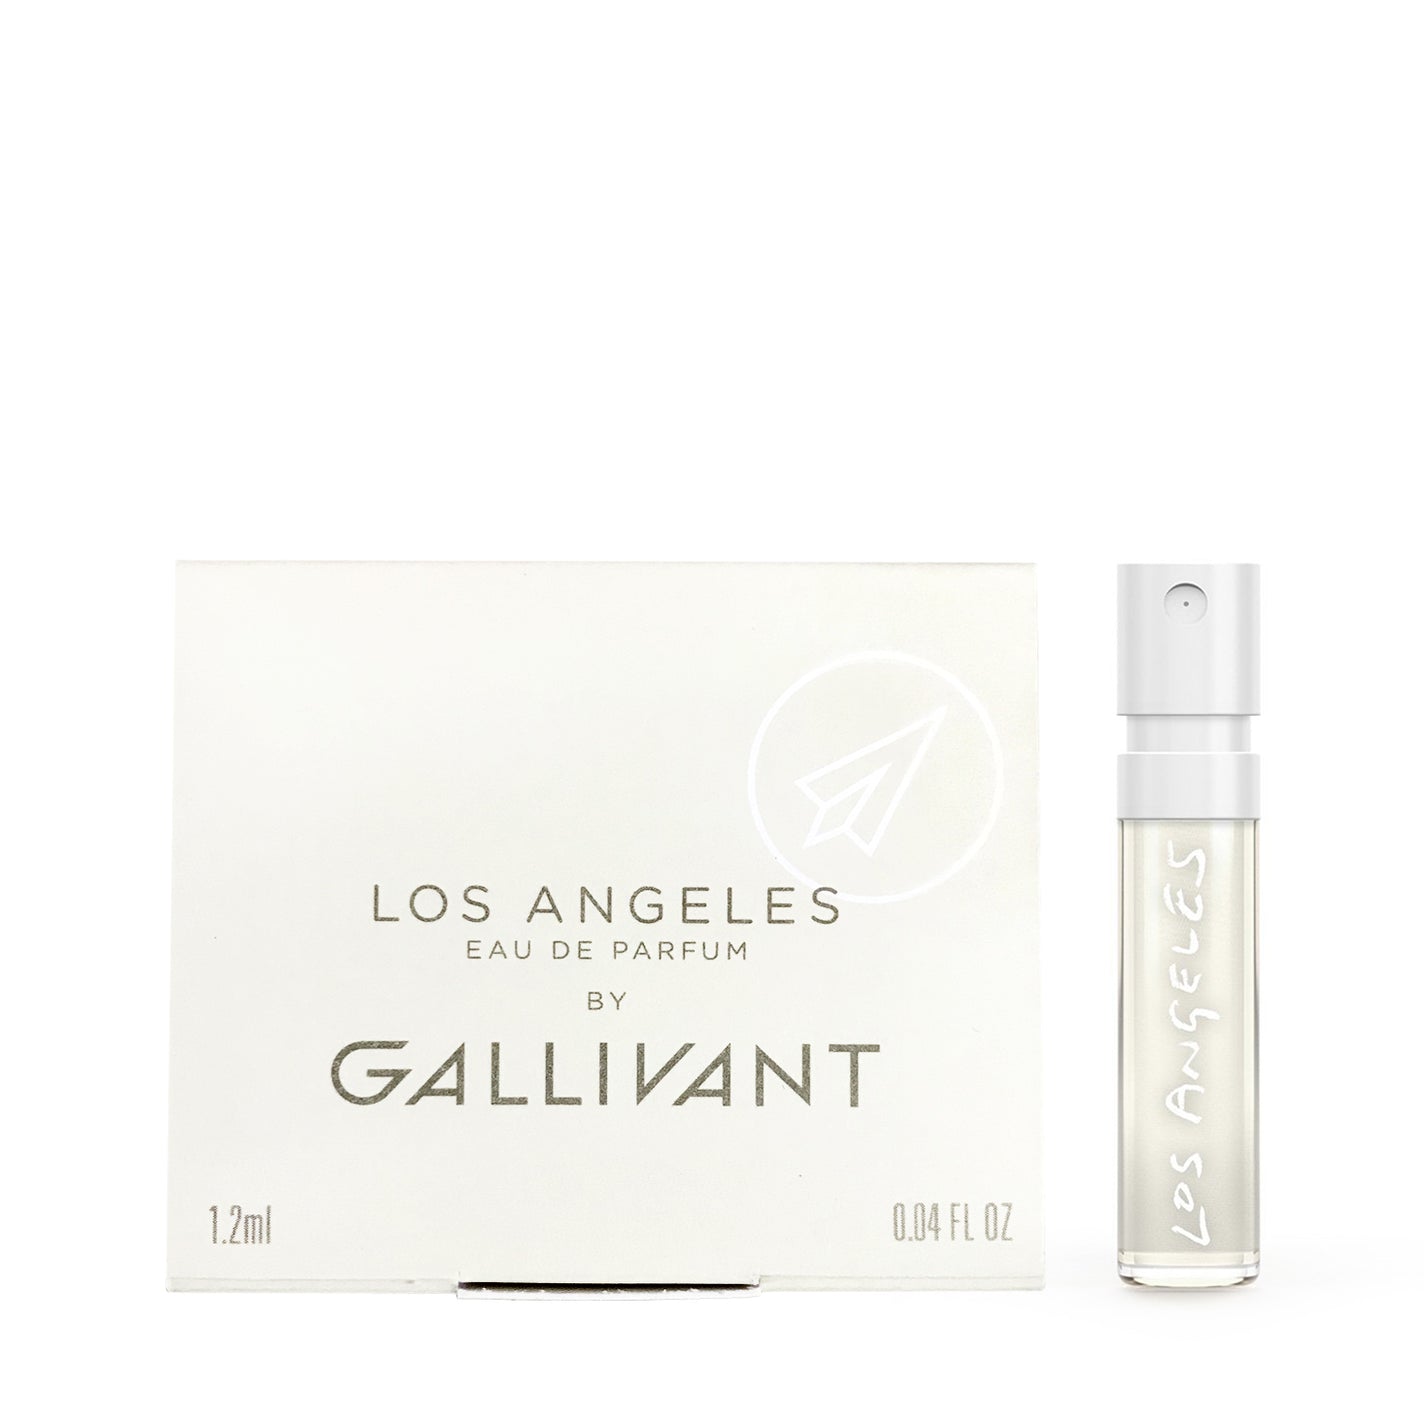 Sample Vial - GALLIVANT Los Angeles Eau de Parfum